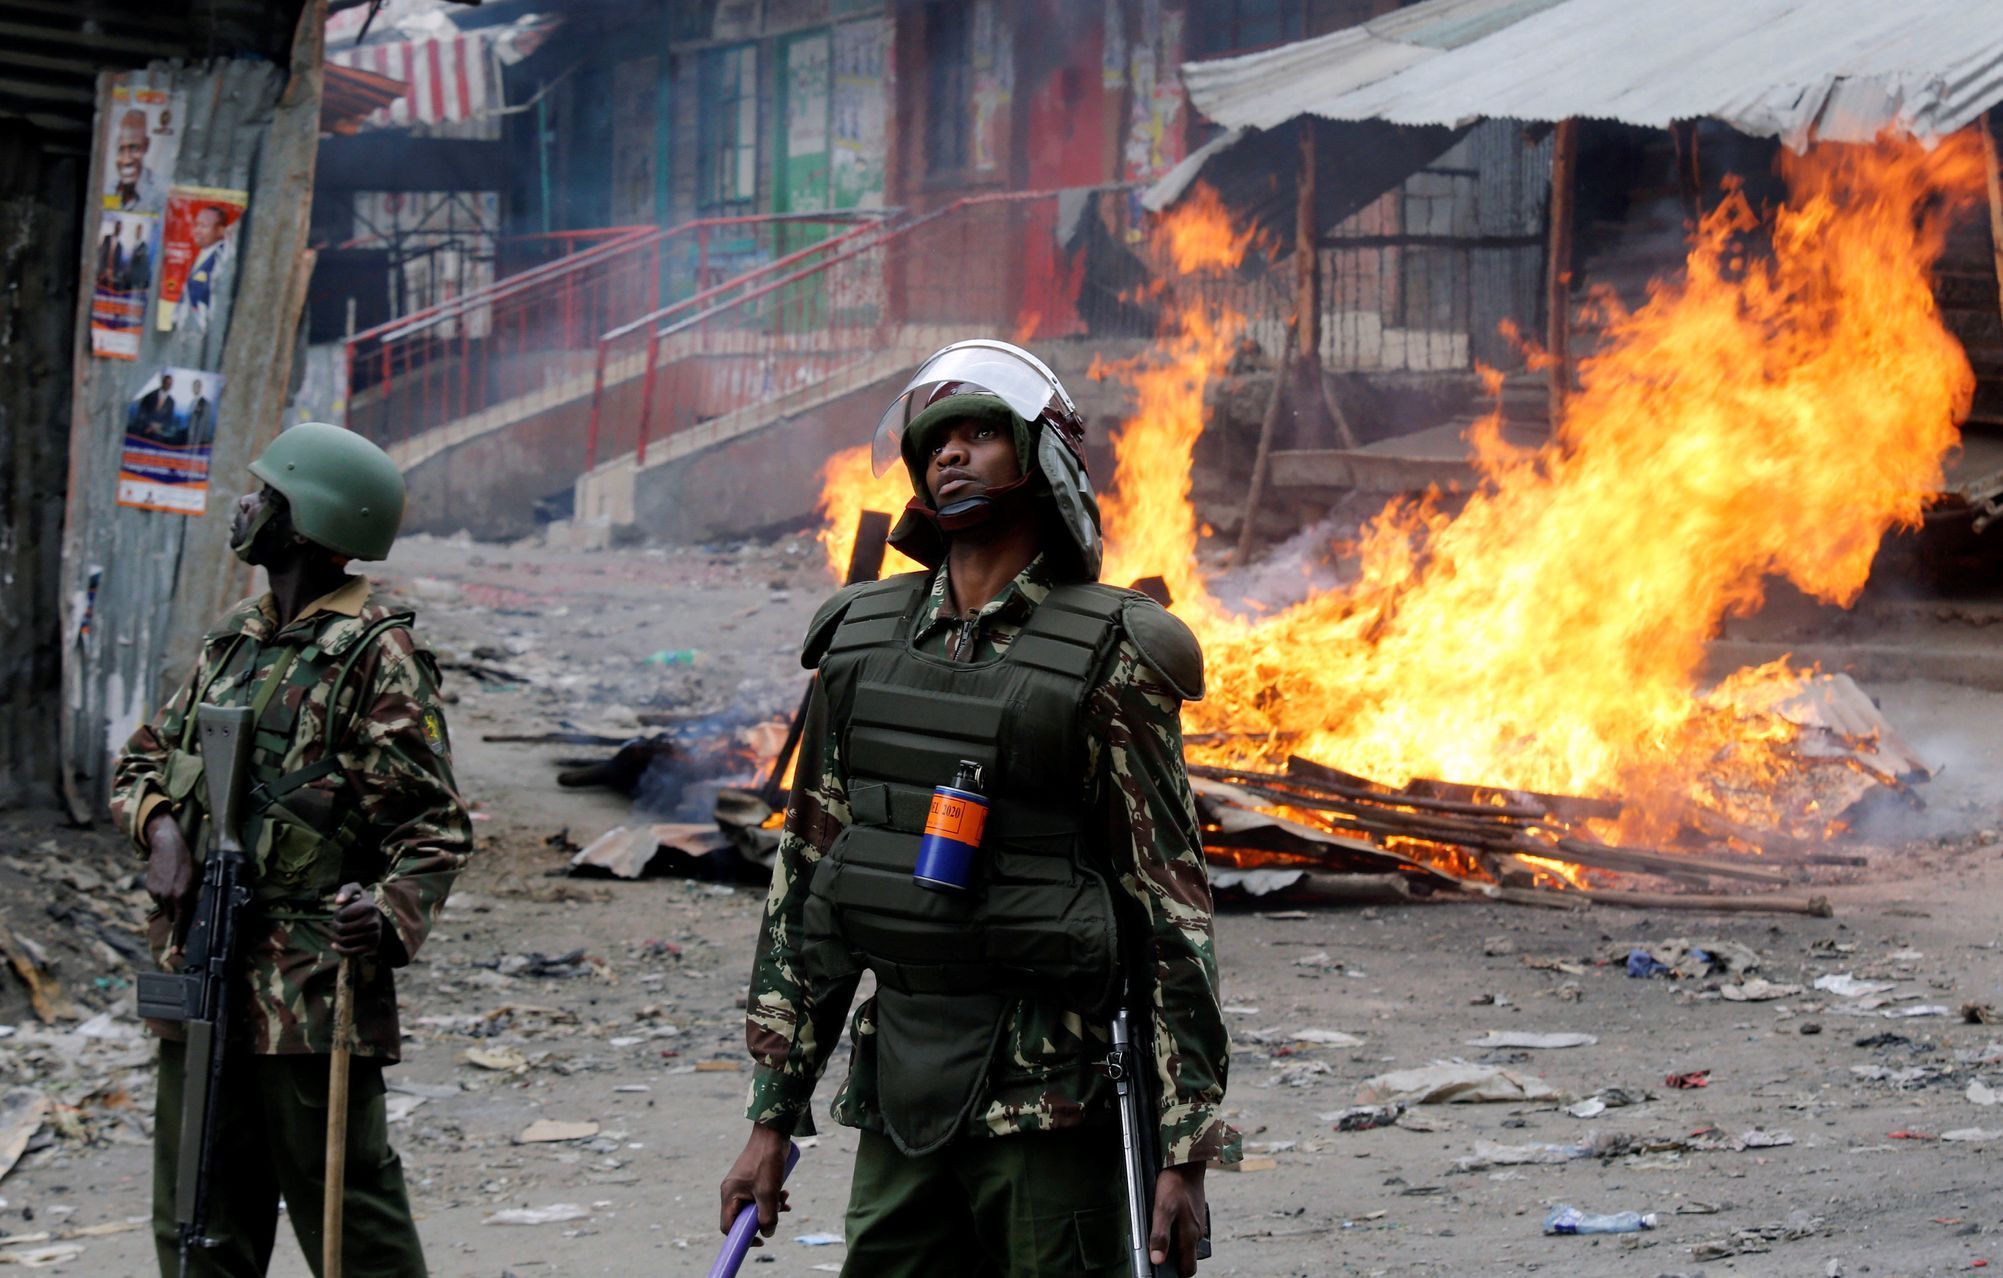 Keňa, povolební násilí